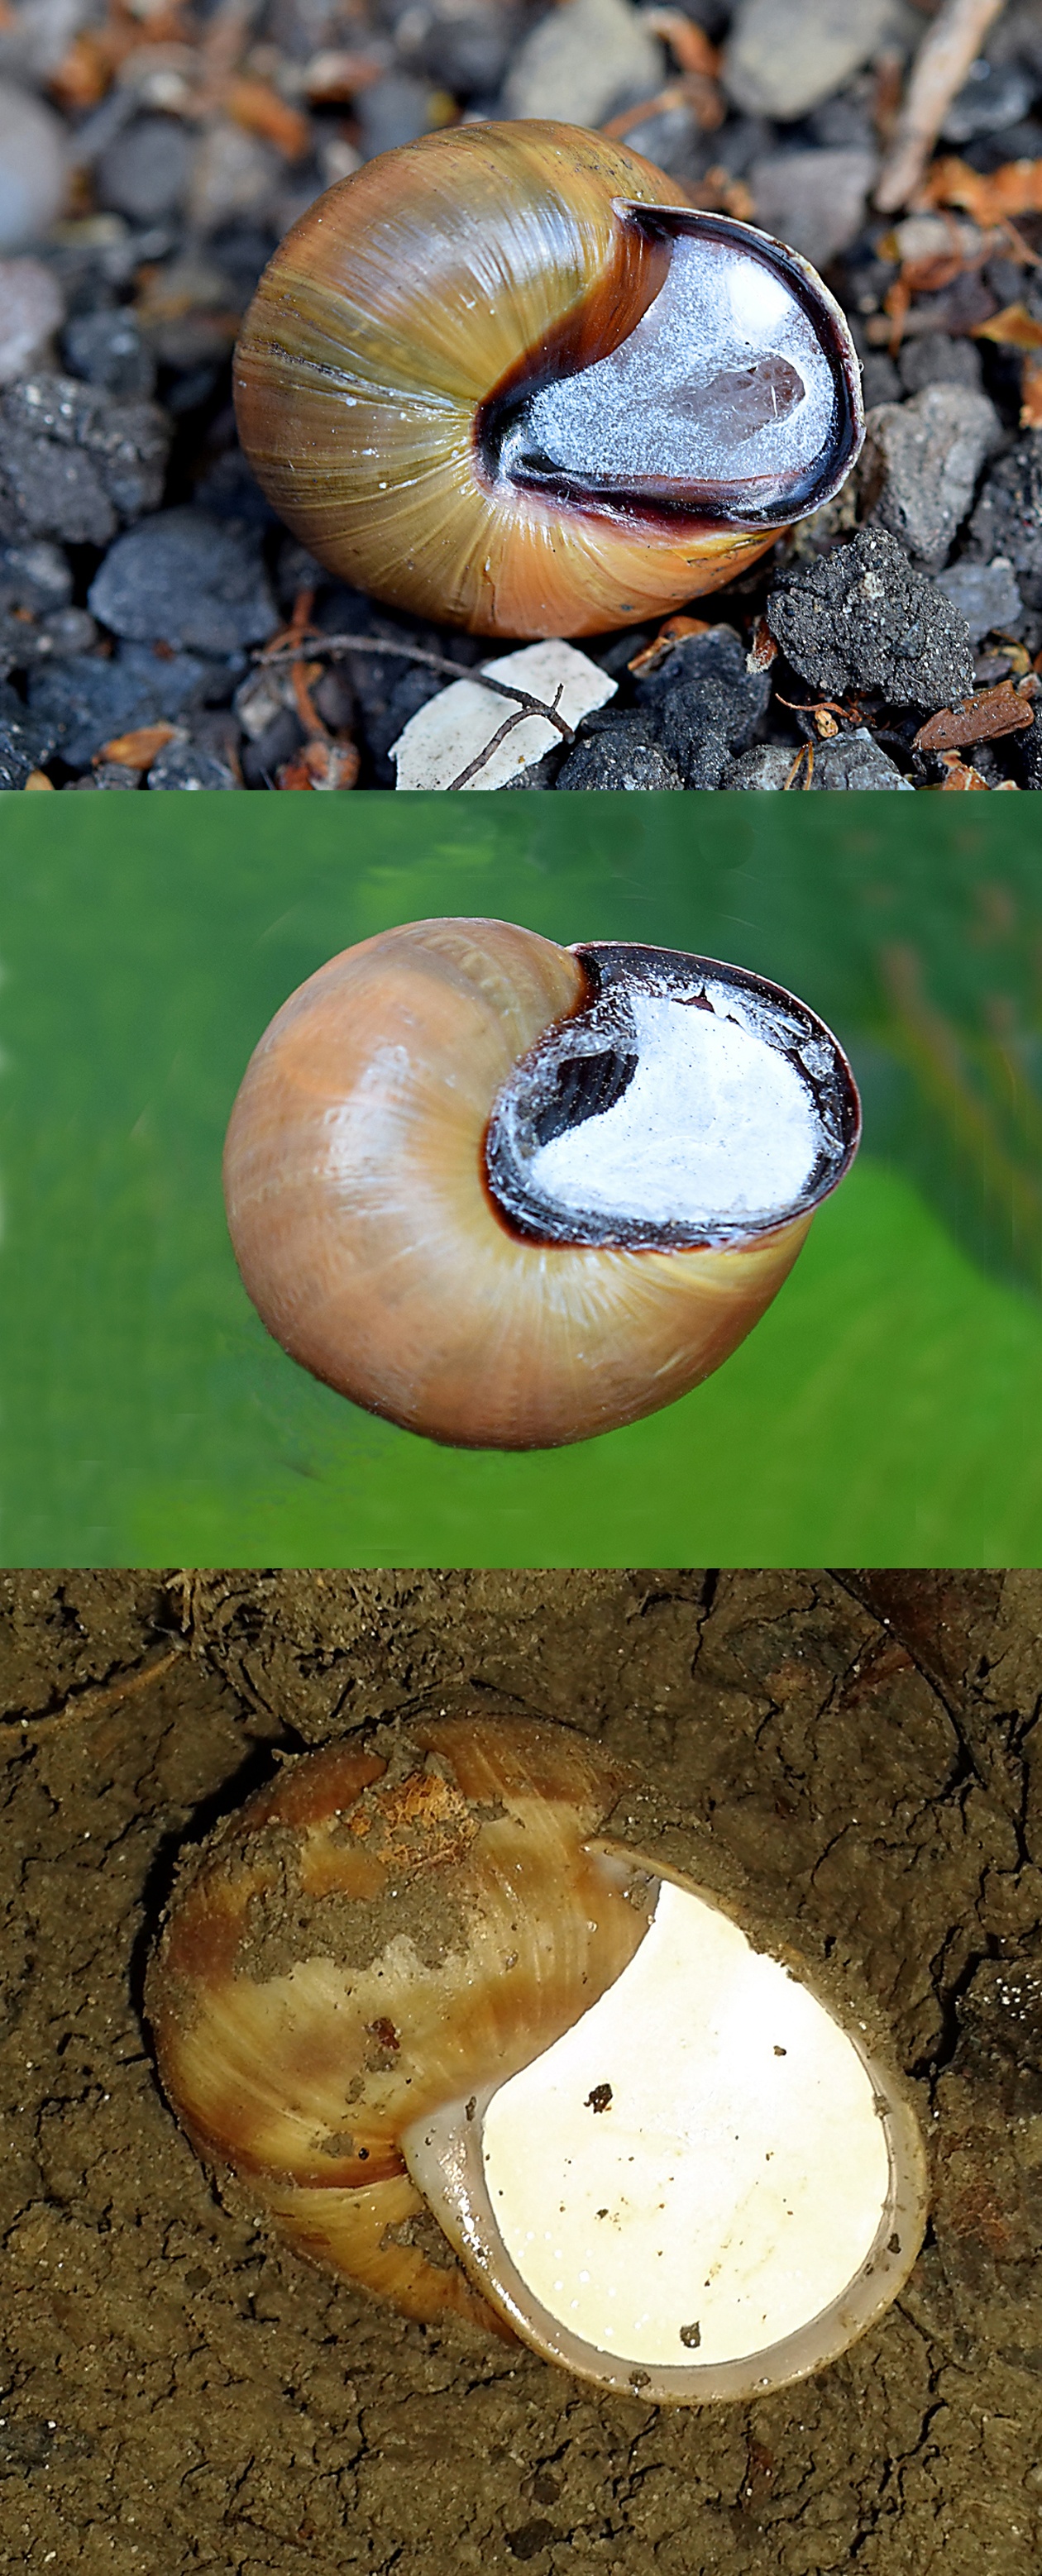 Why do snails go into hibernation?